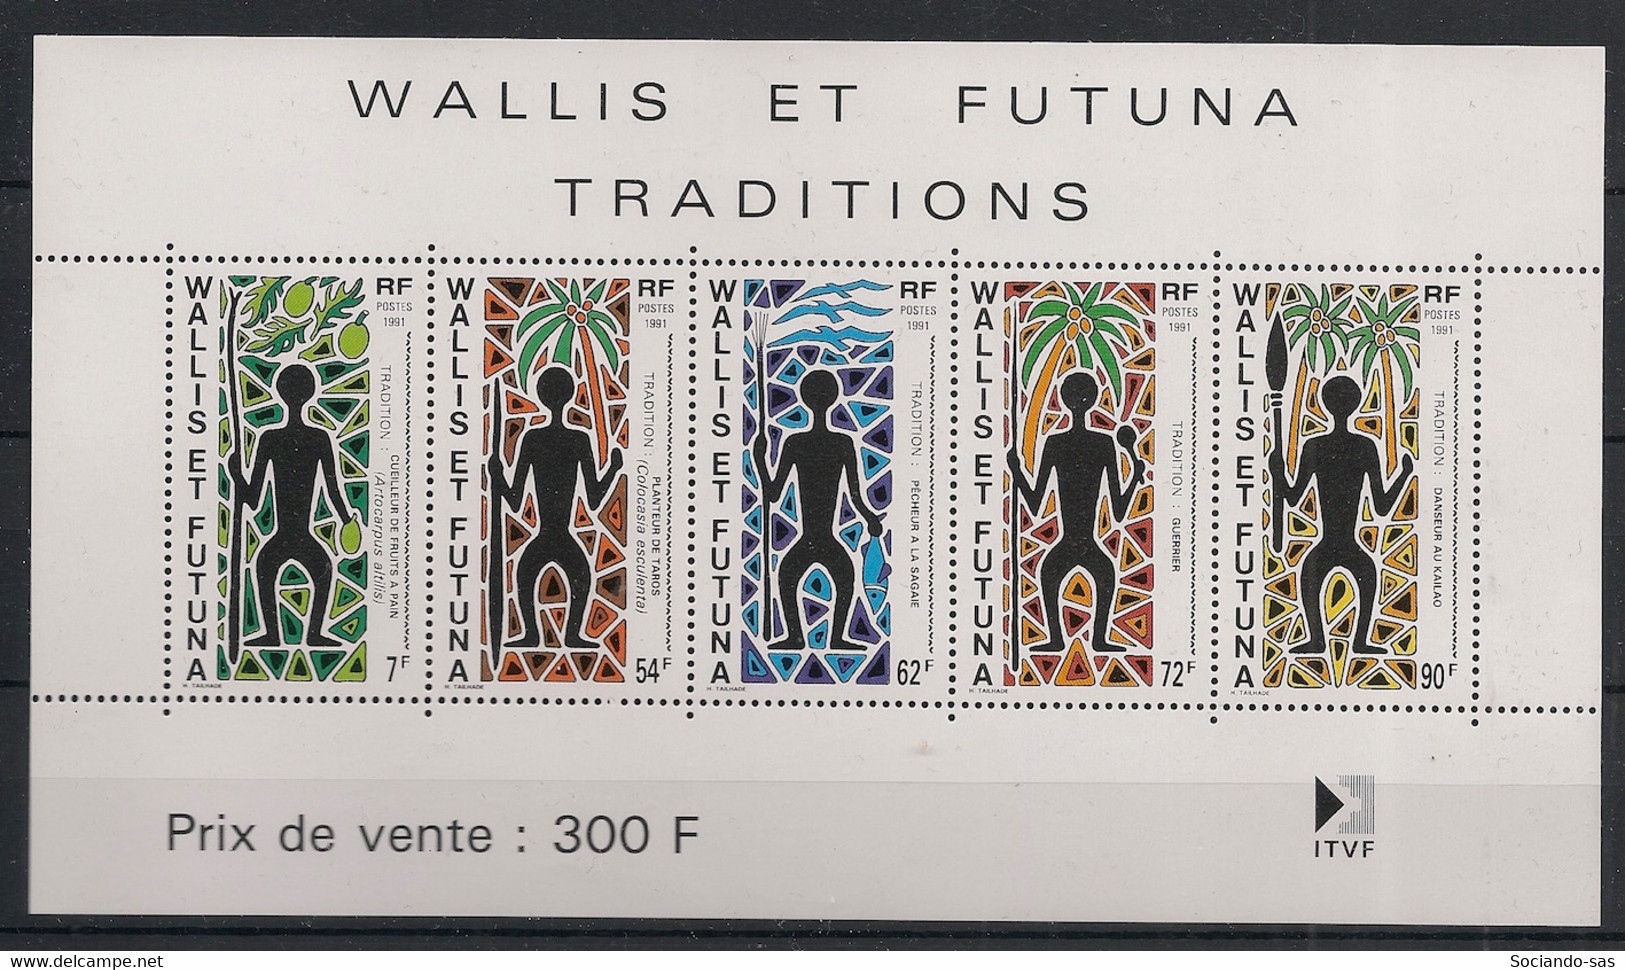 WALLIS ET FUTUNA - 1991 - Bloc Feuillet BF N°YT. 5 - Traditions - Neuf Luxe ** / MNH / Postfrisch - Blocks & Sheetlets